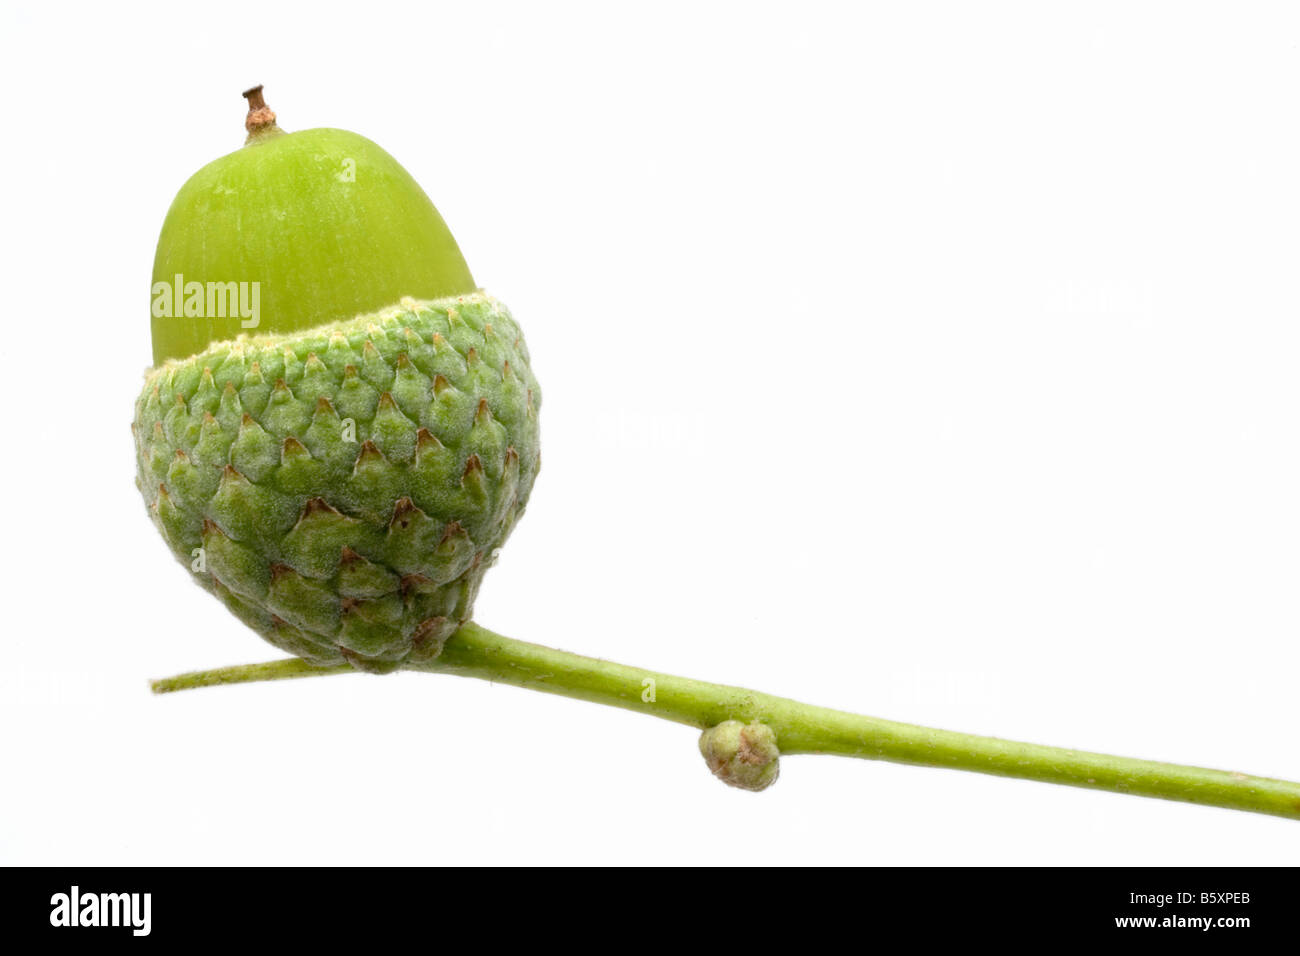 Une tige verte est titulaire d'un 'acorn cup' dans lequel il y a un green acorn, (graine d'un chêne). Arrière-plan blanc. Banque D'Images